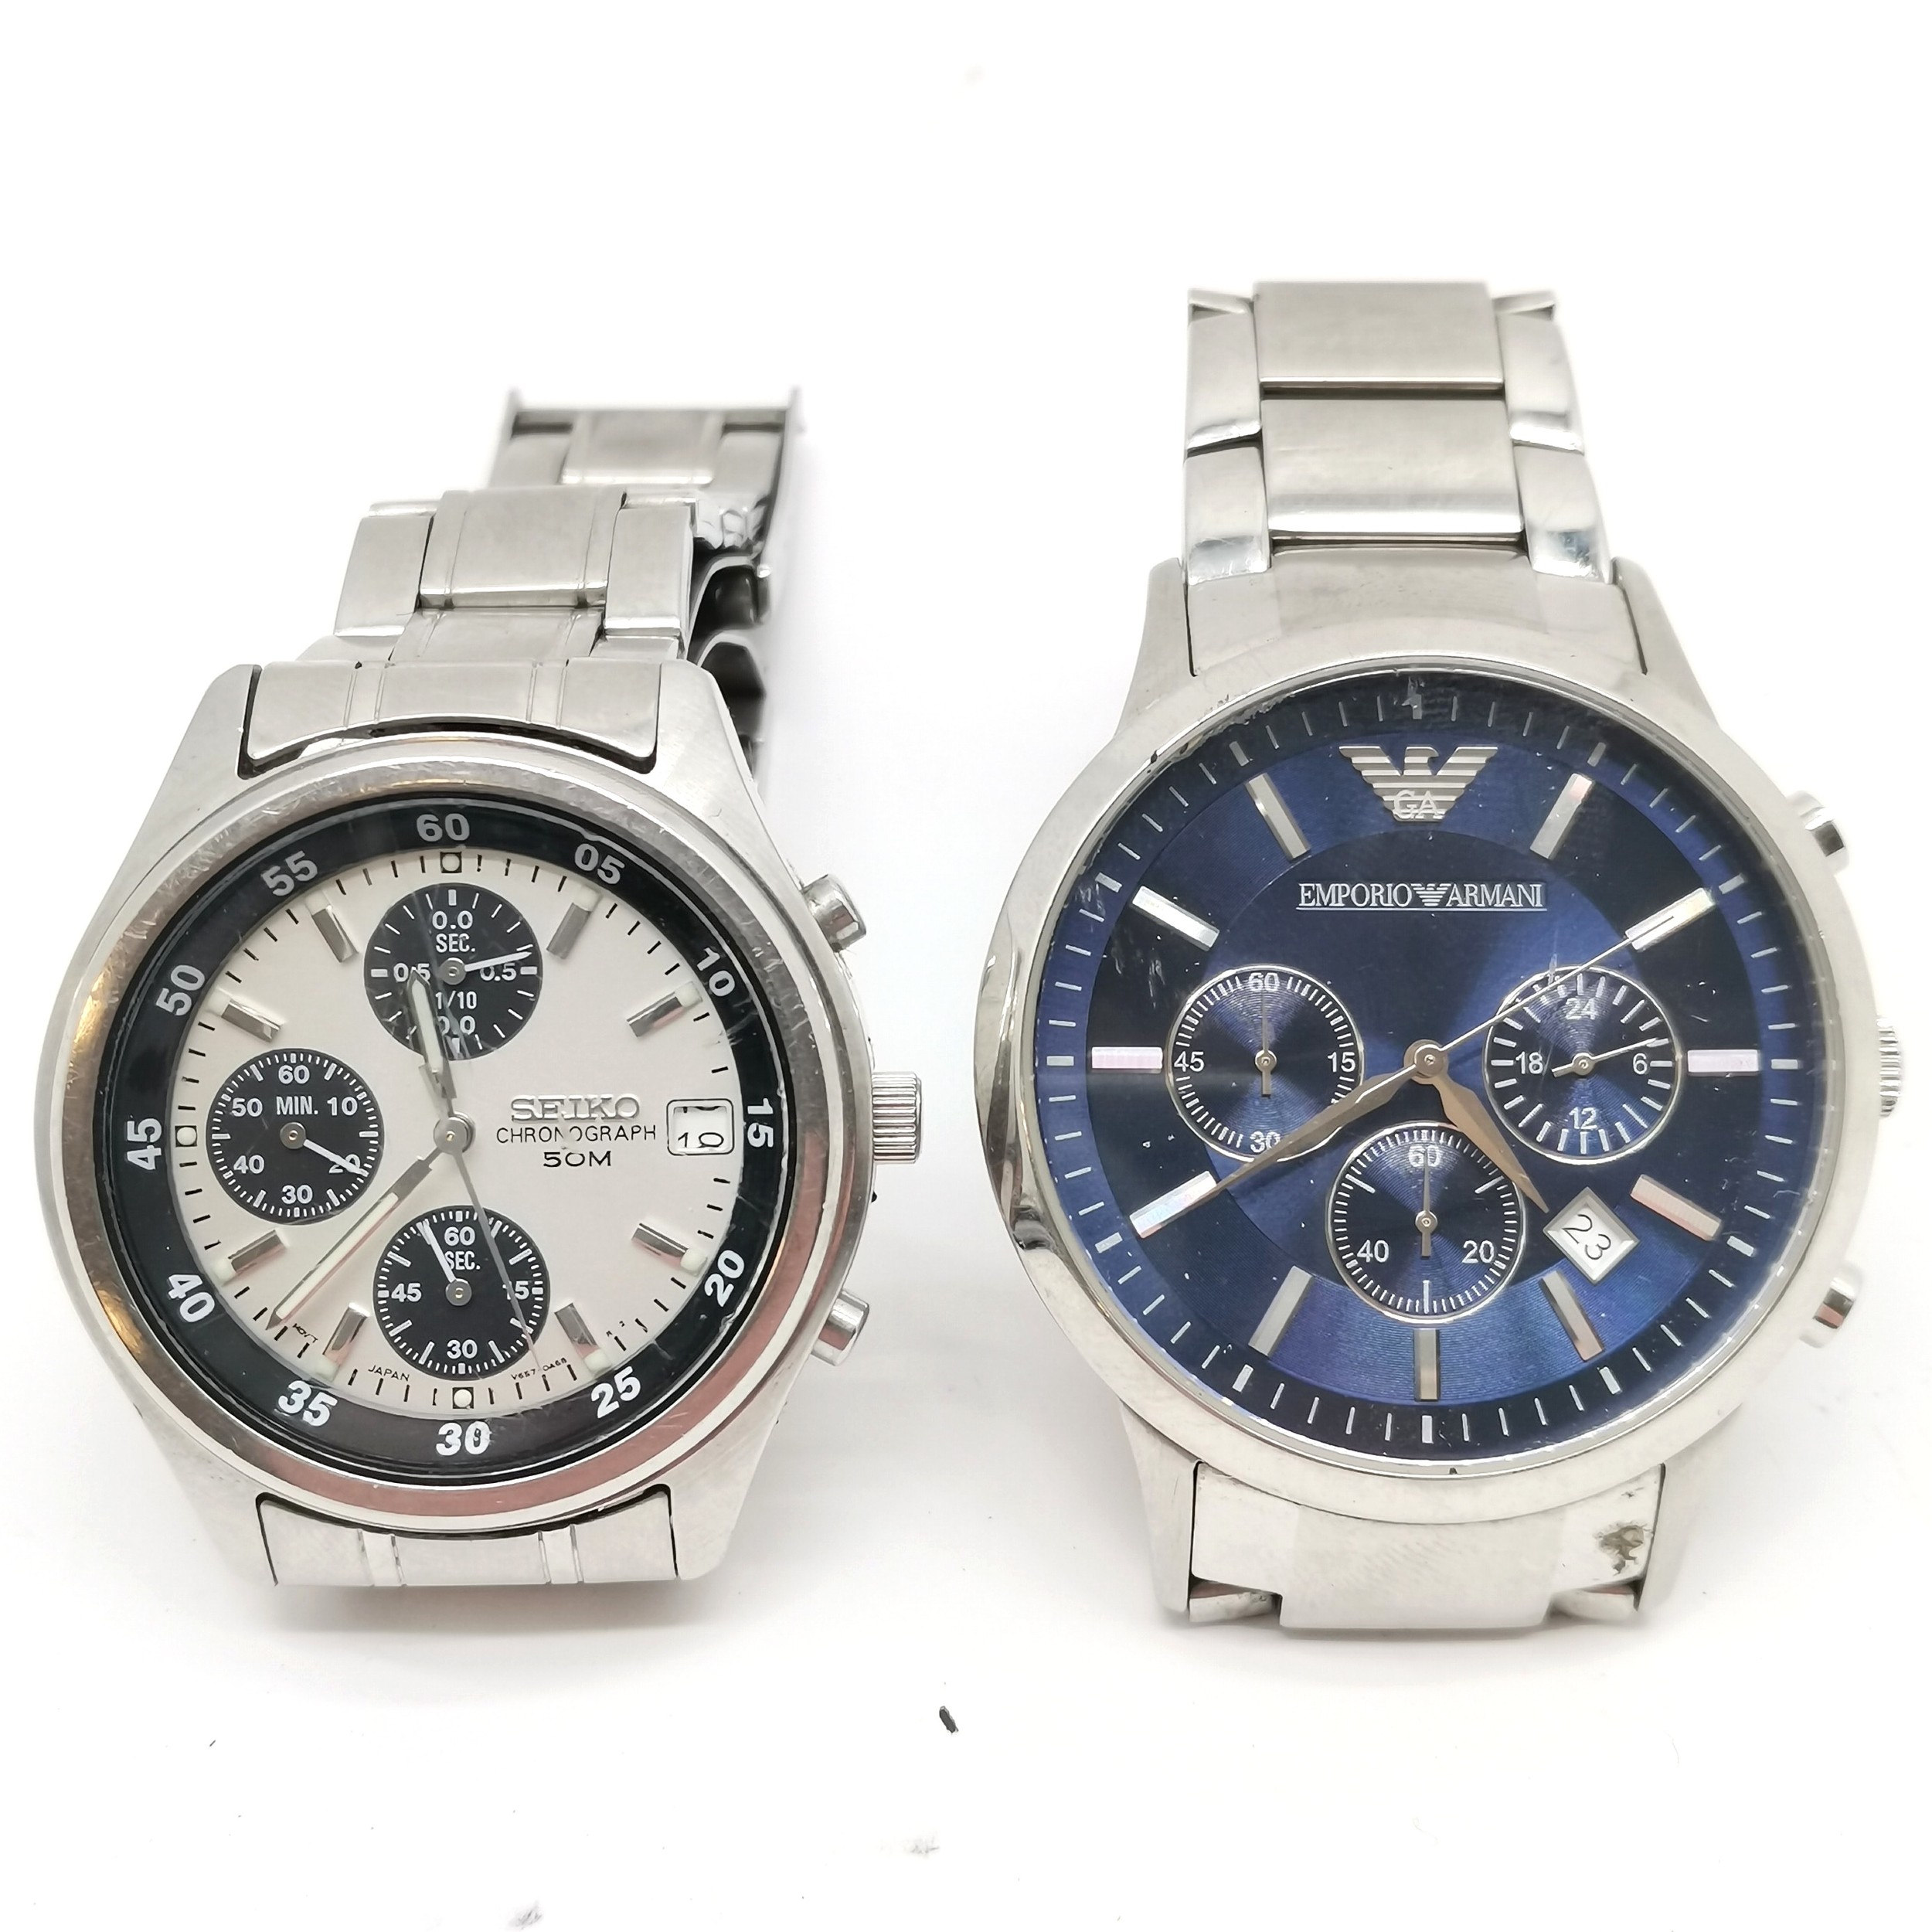 Seiko chronograph 50mm quartz wristwatch t/w Emporio Armani fashion quartz watch in stainless